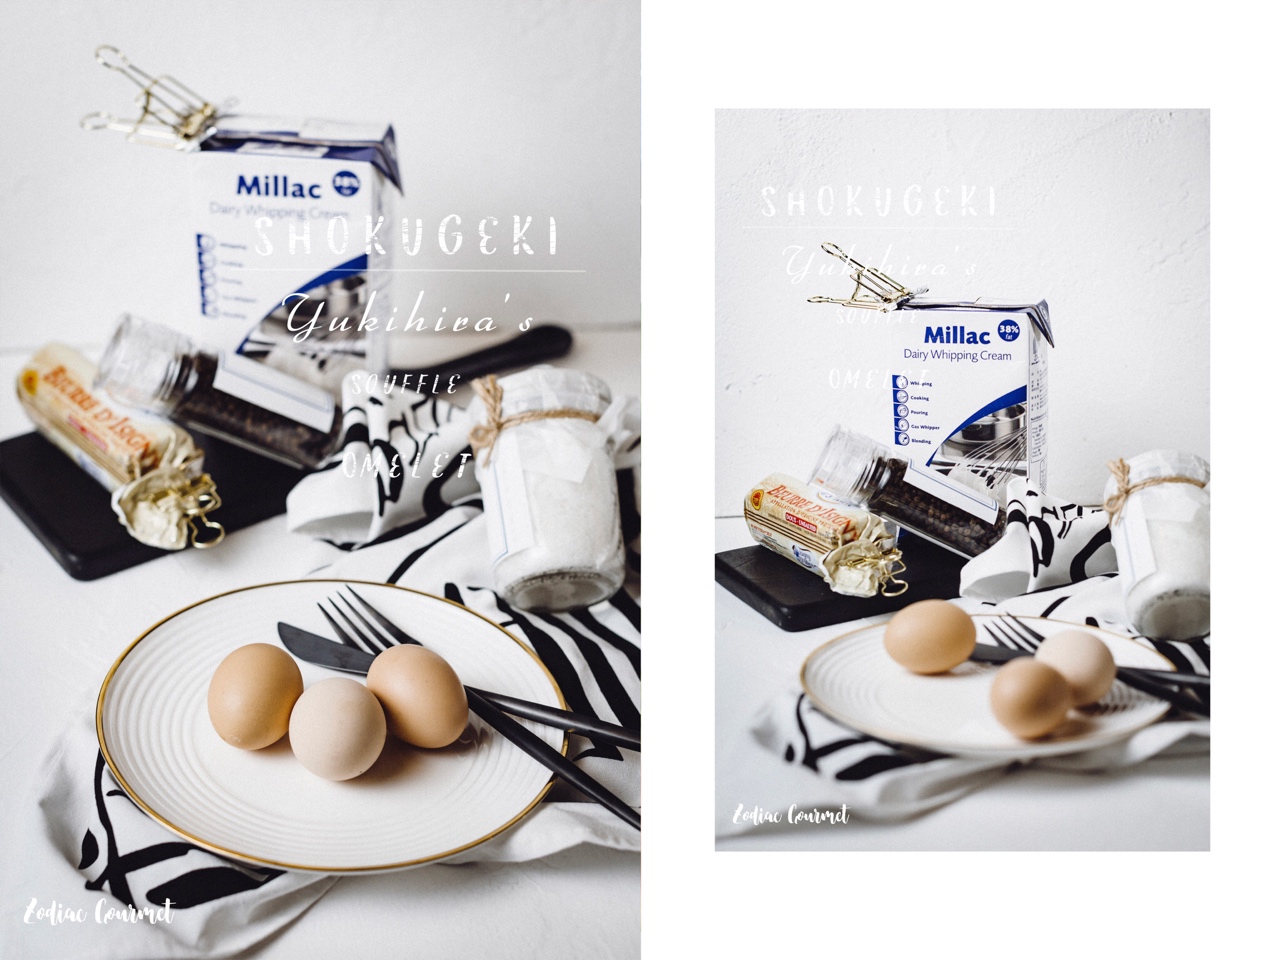 食谱 | SHOKUGEKI之Bogu Bogu Souffle Omelet